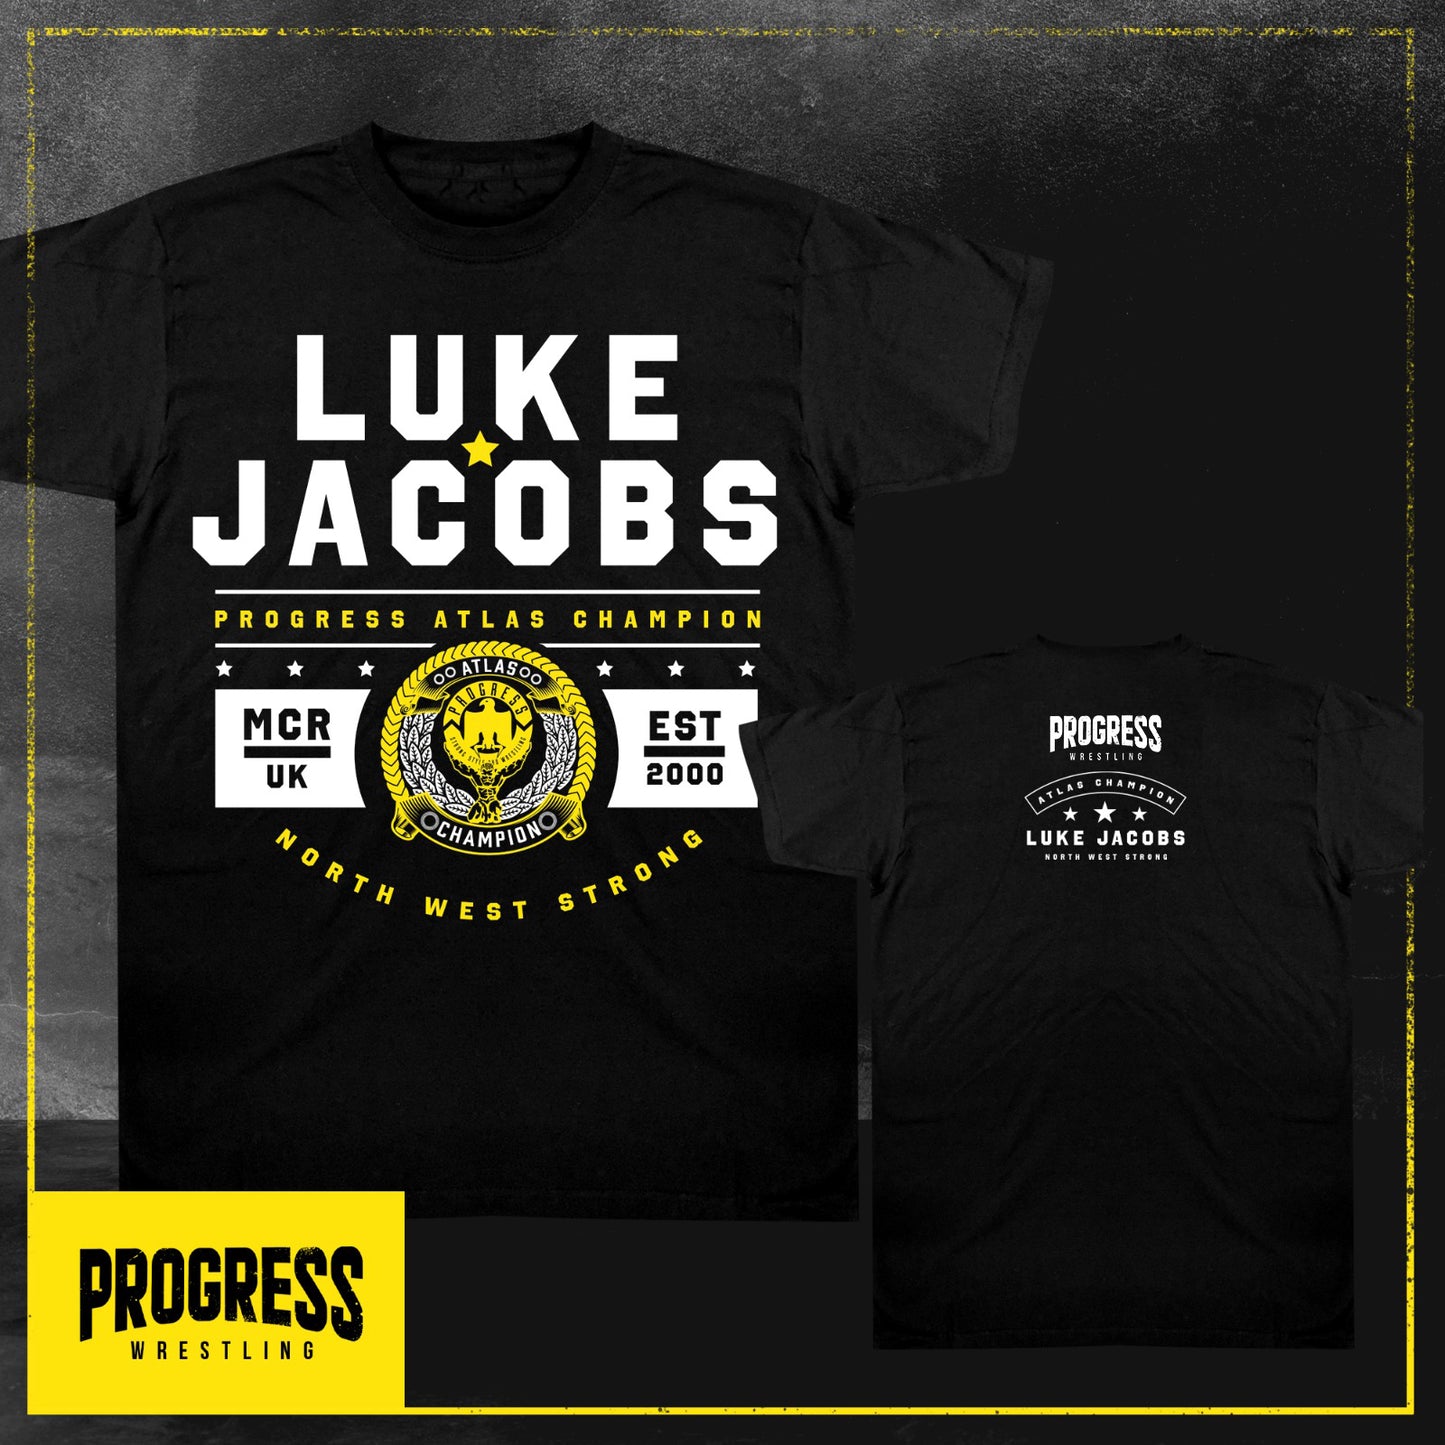 PROGRESS Wrestling T Shirt - Luke Jacobs